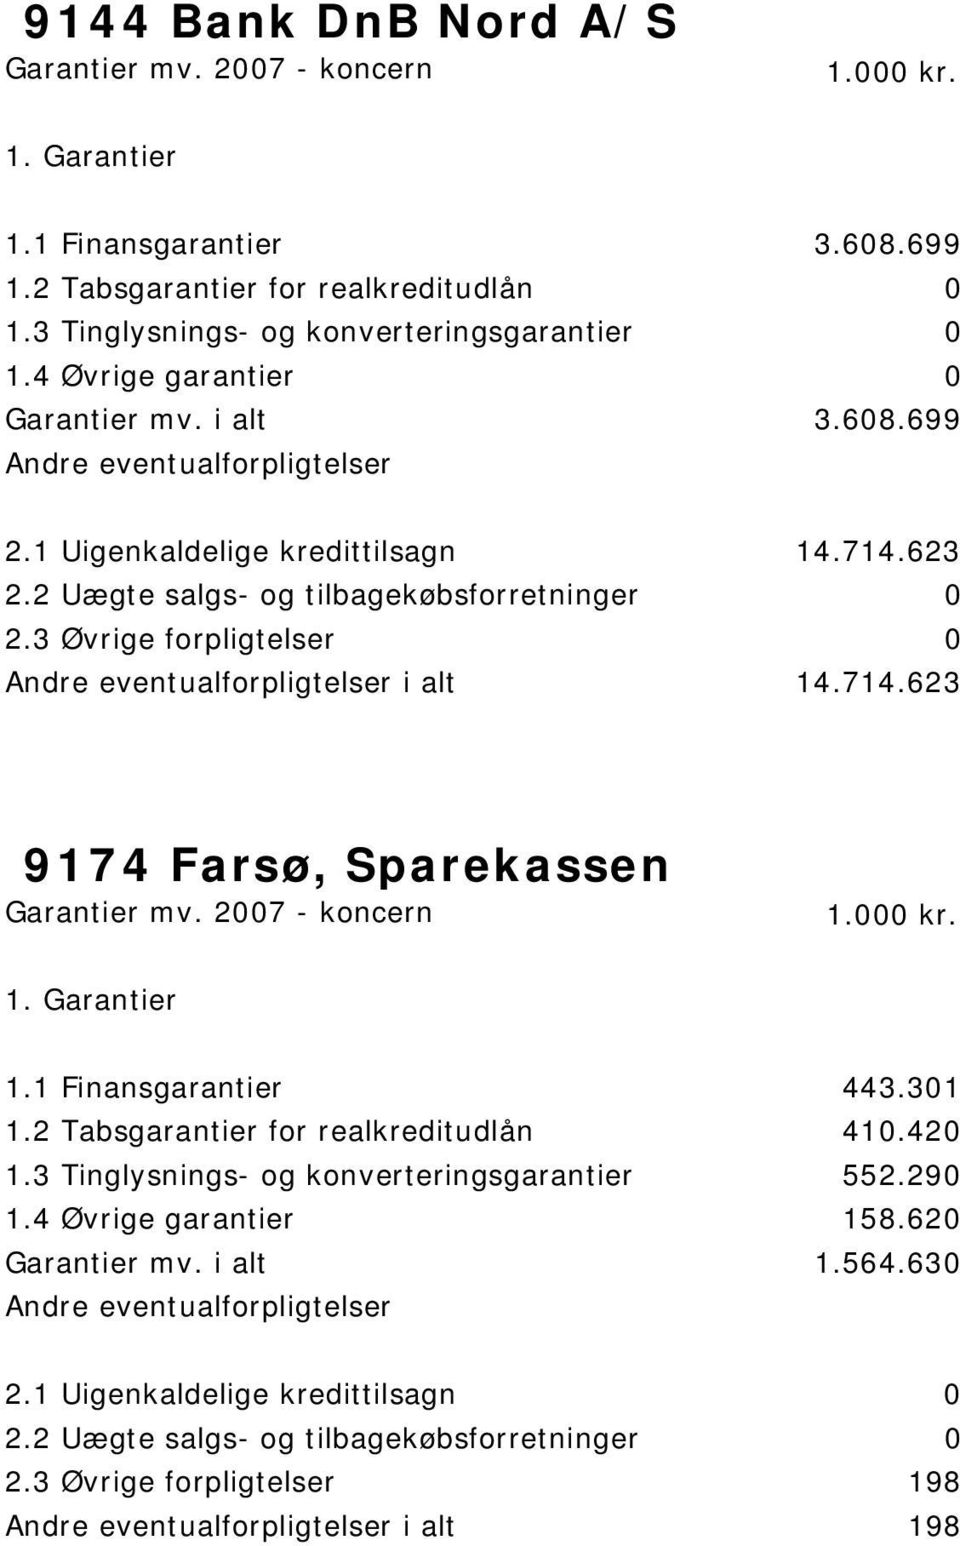 623 i alt 14.714.623 9174 Farsø, Sparekassen 1.1 Finansgarantier 443.301 1.